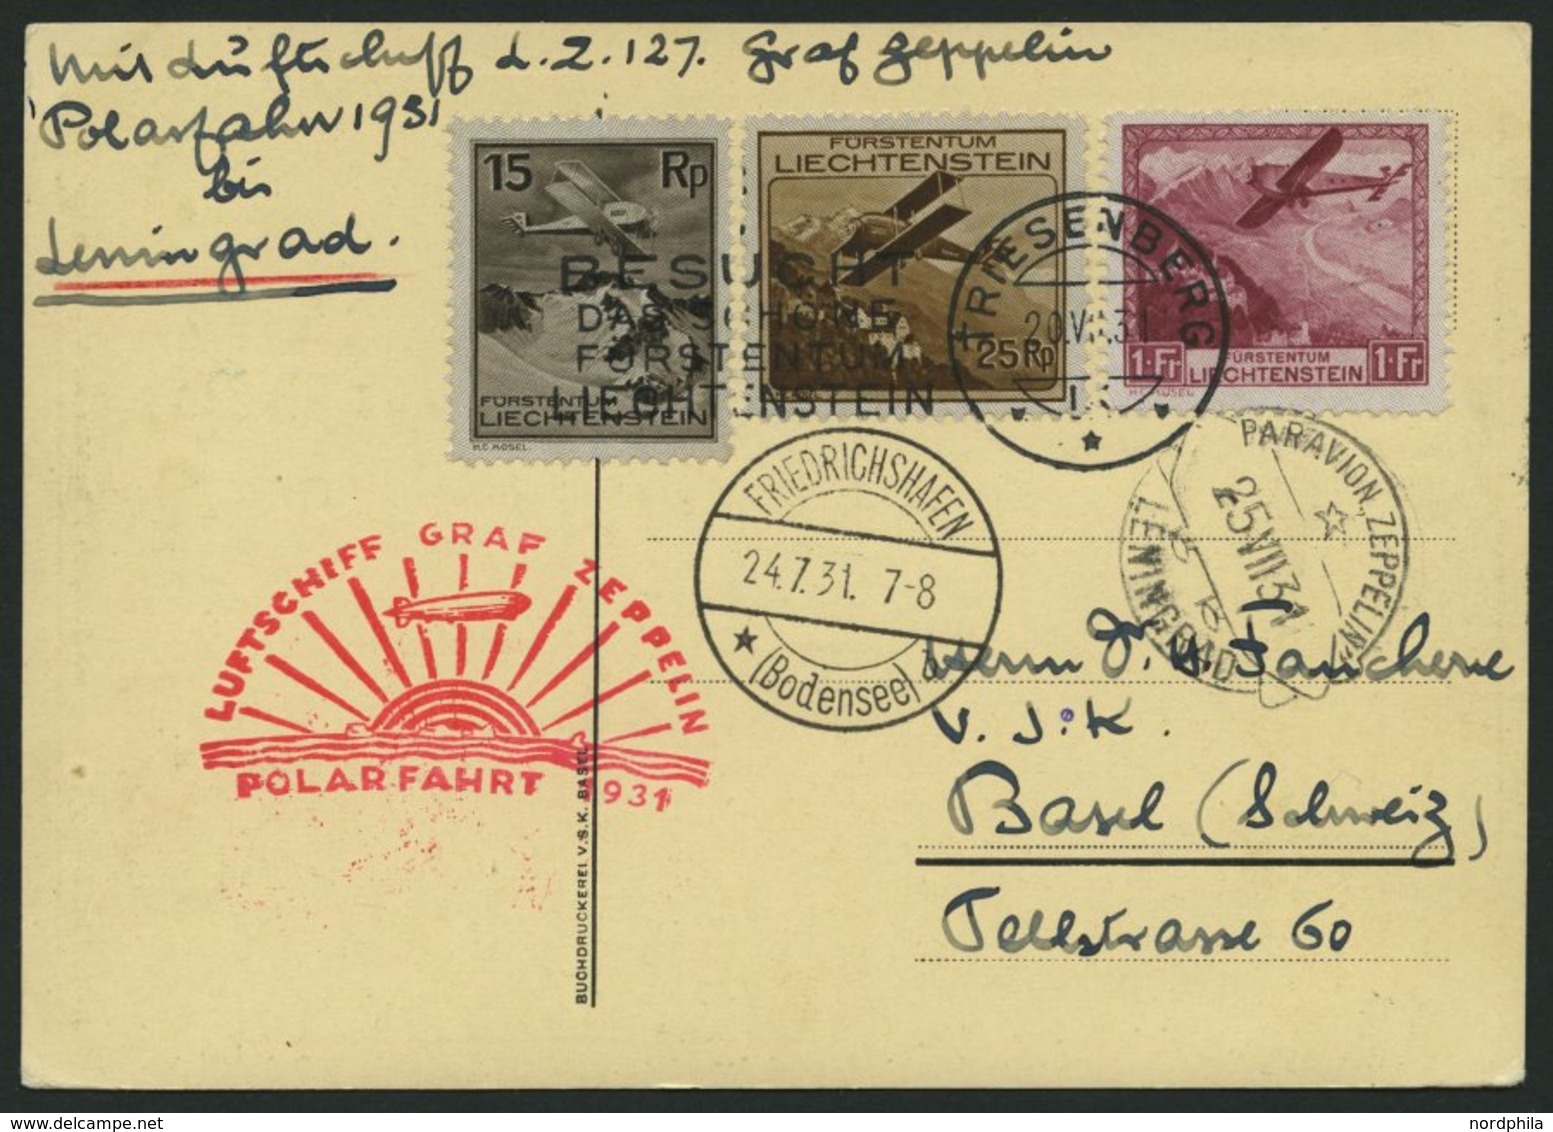 ZULEITUNGSPOST 119E BRIEF, Liechtenstein: 1931, Polarfahrt, Abgabe Leningrad, Prachtkarte - Luft- Und Zeppelinpost